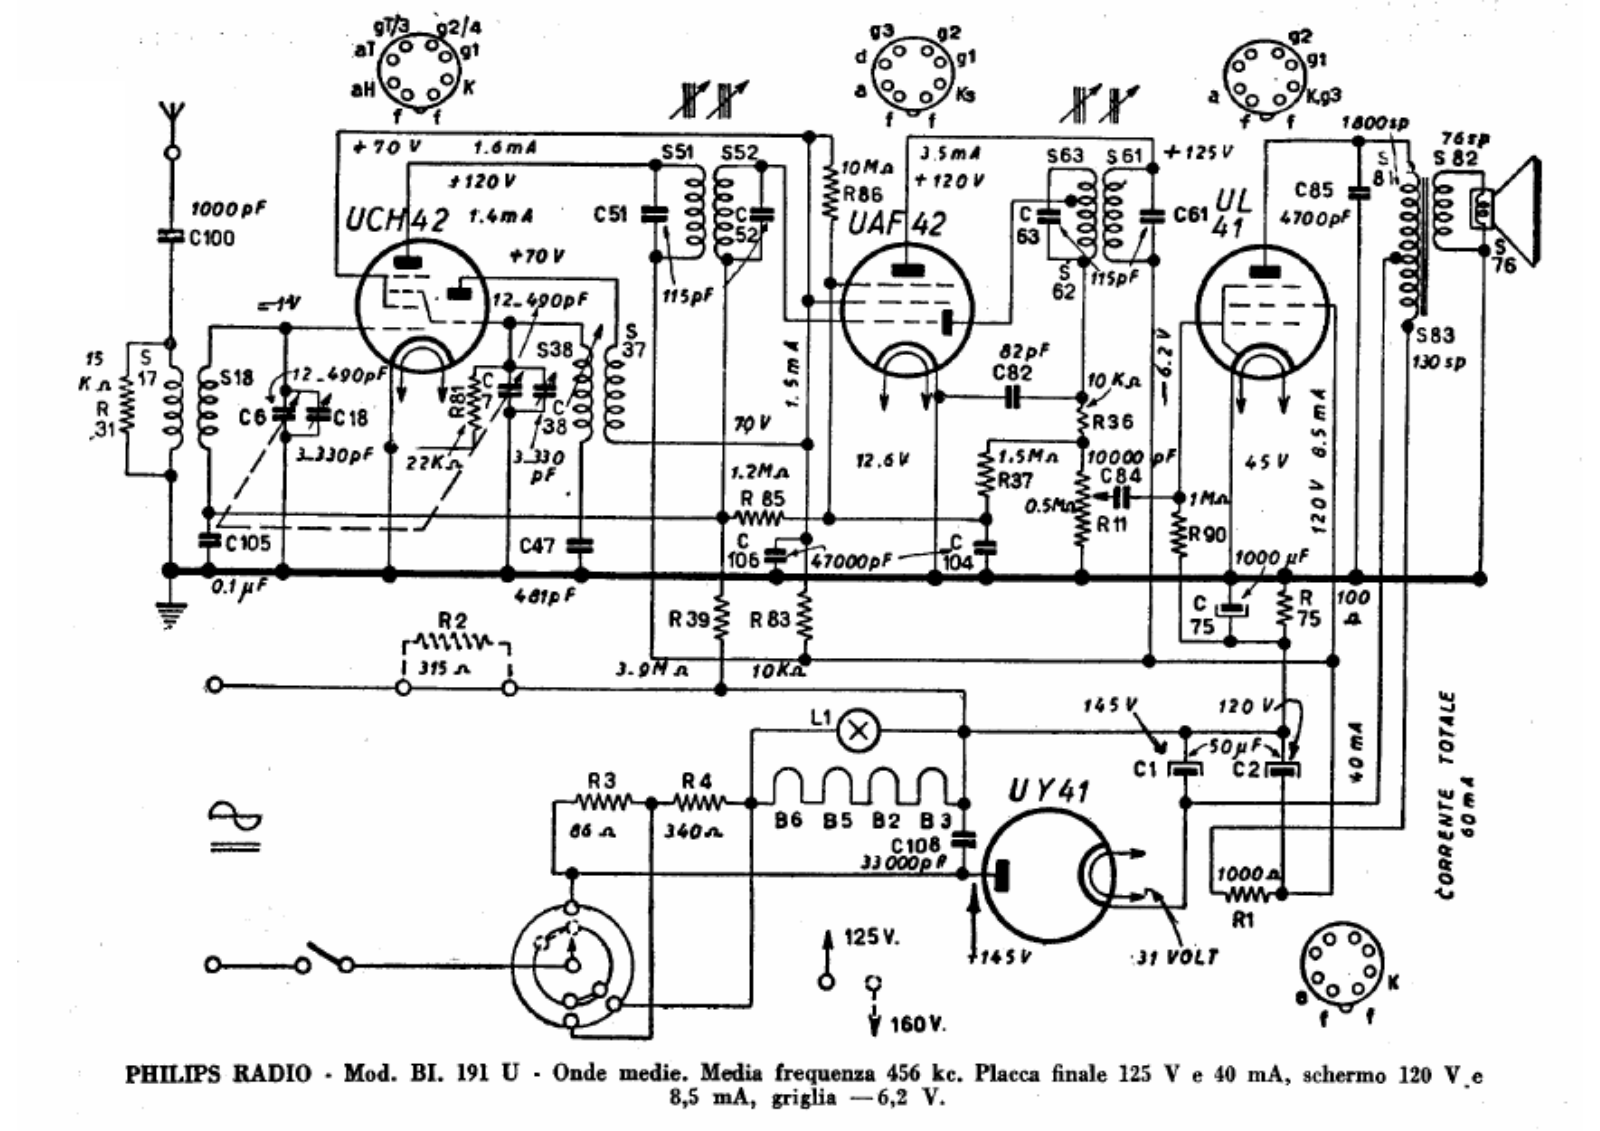 Philips bi191u schematic